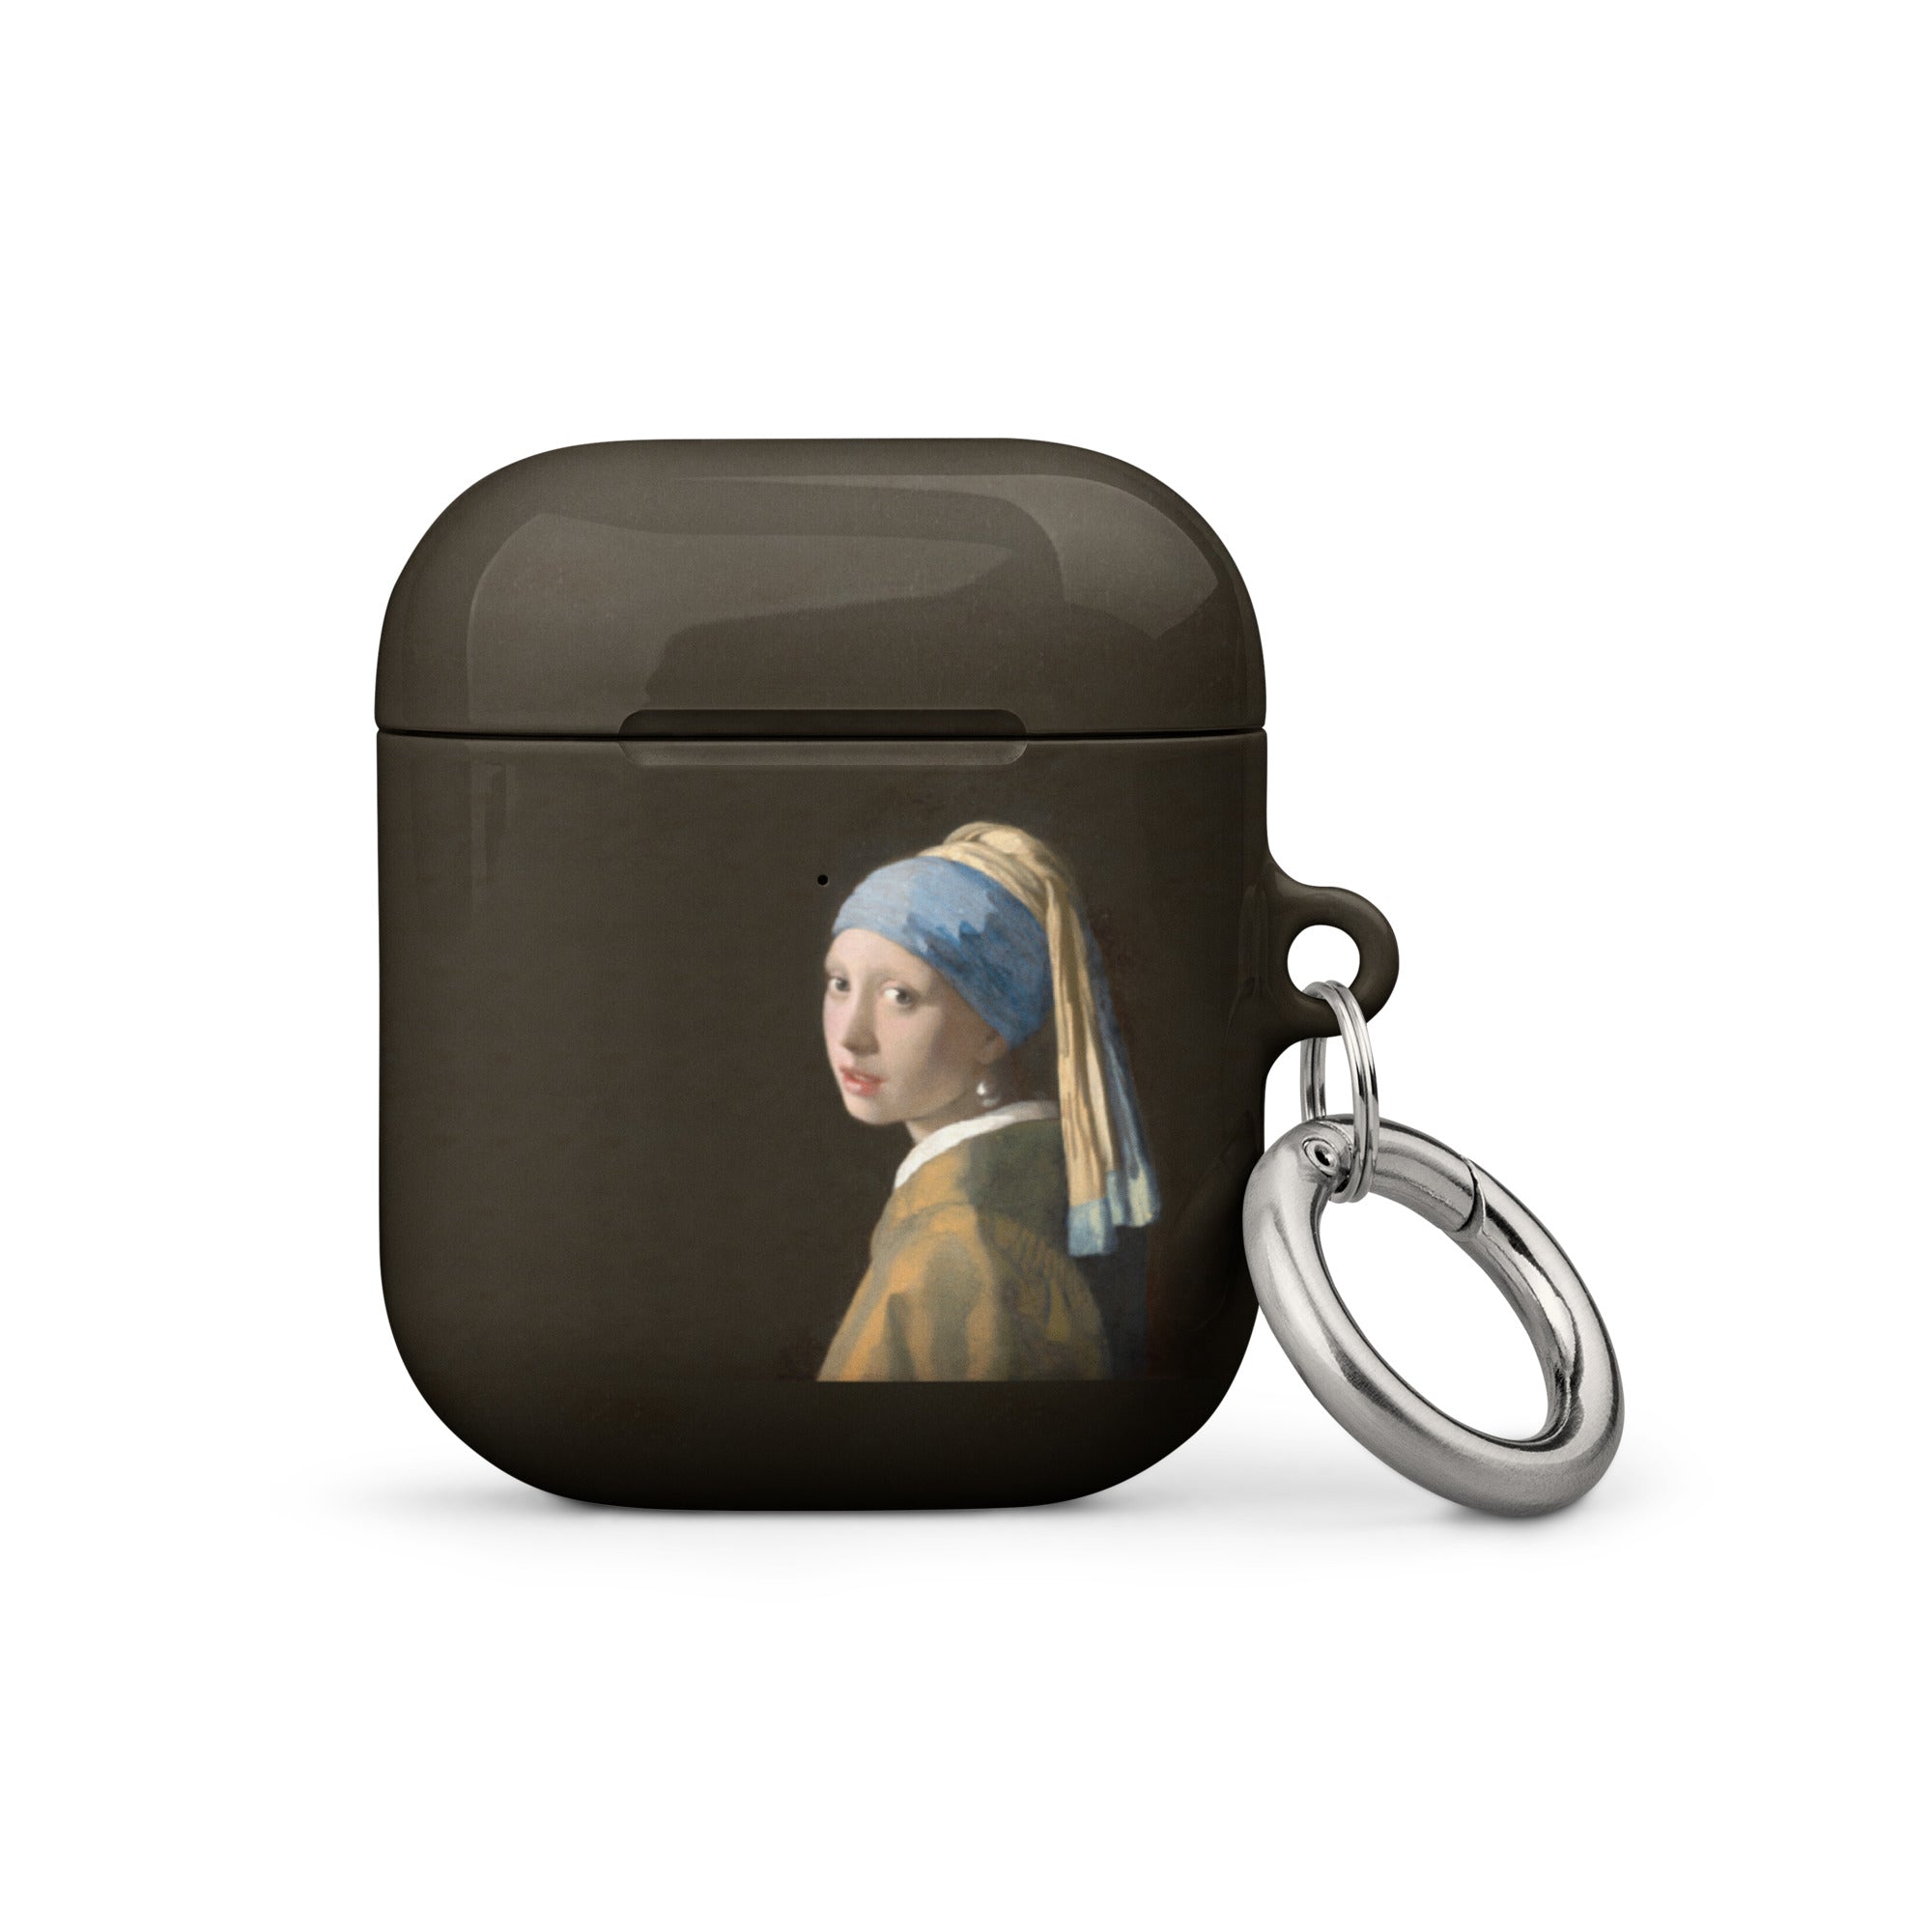 Johannes Vermeer „Mädchen mit dem Perlenohrring“ Berühmtes Gemälde AirPods®-Hülle | Premium-Kunsthülle für AirPods®